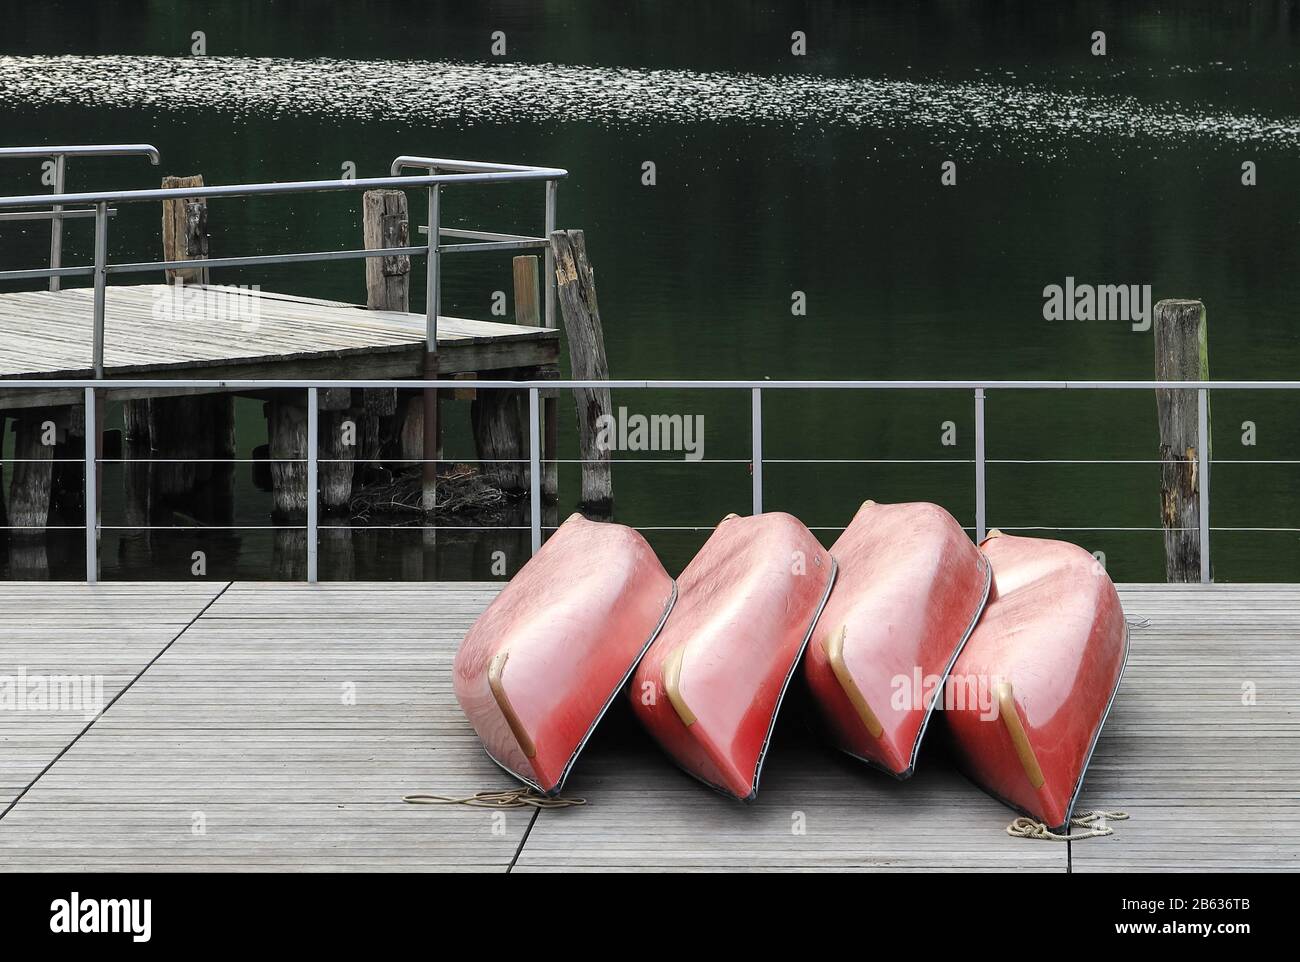 Rote Kanus am Dieksee in Malente, Deutschland. Stockfoto